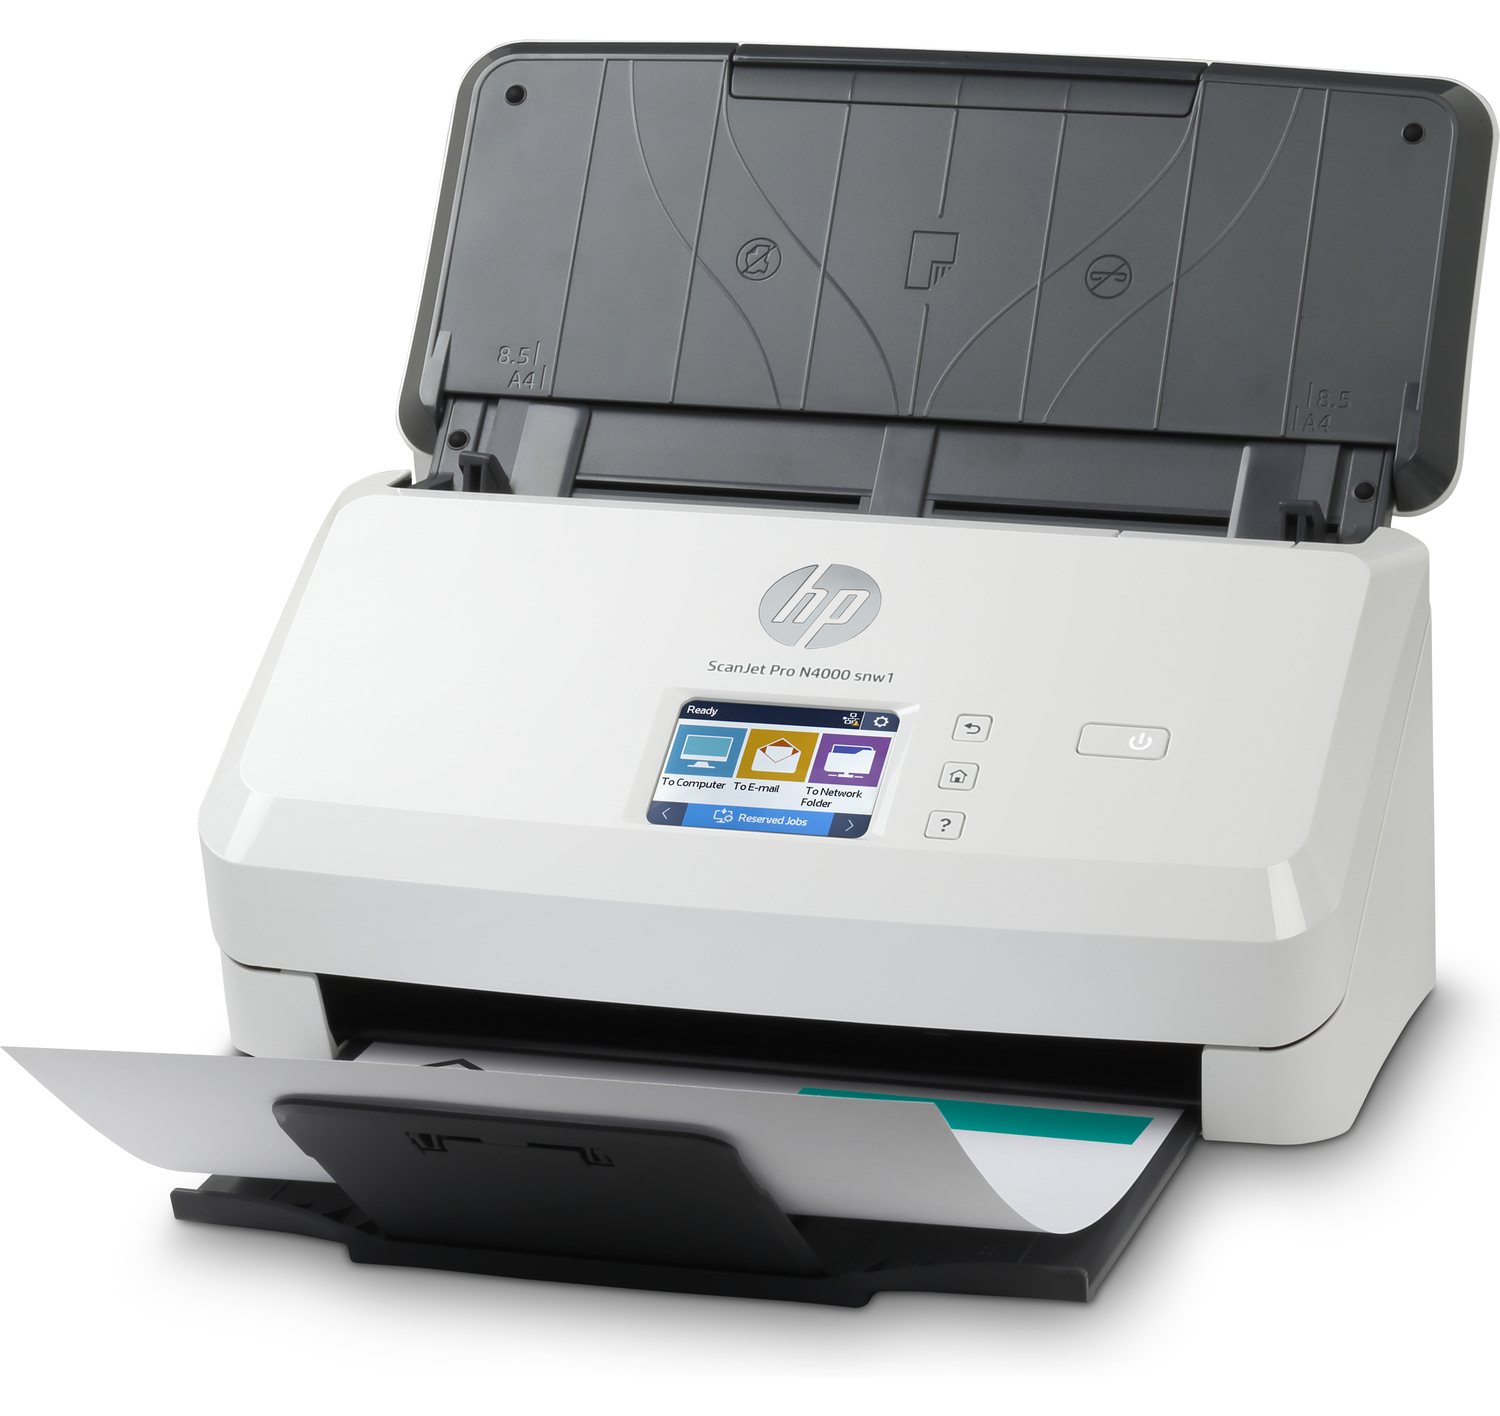 Máy scan HP ScanJet Pro N4000 snw1 (6FW08A)